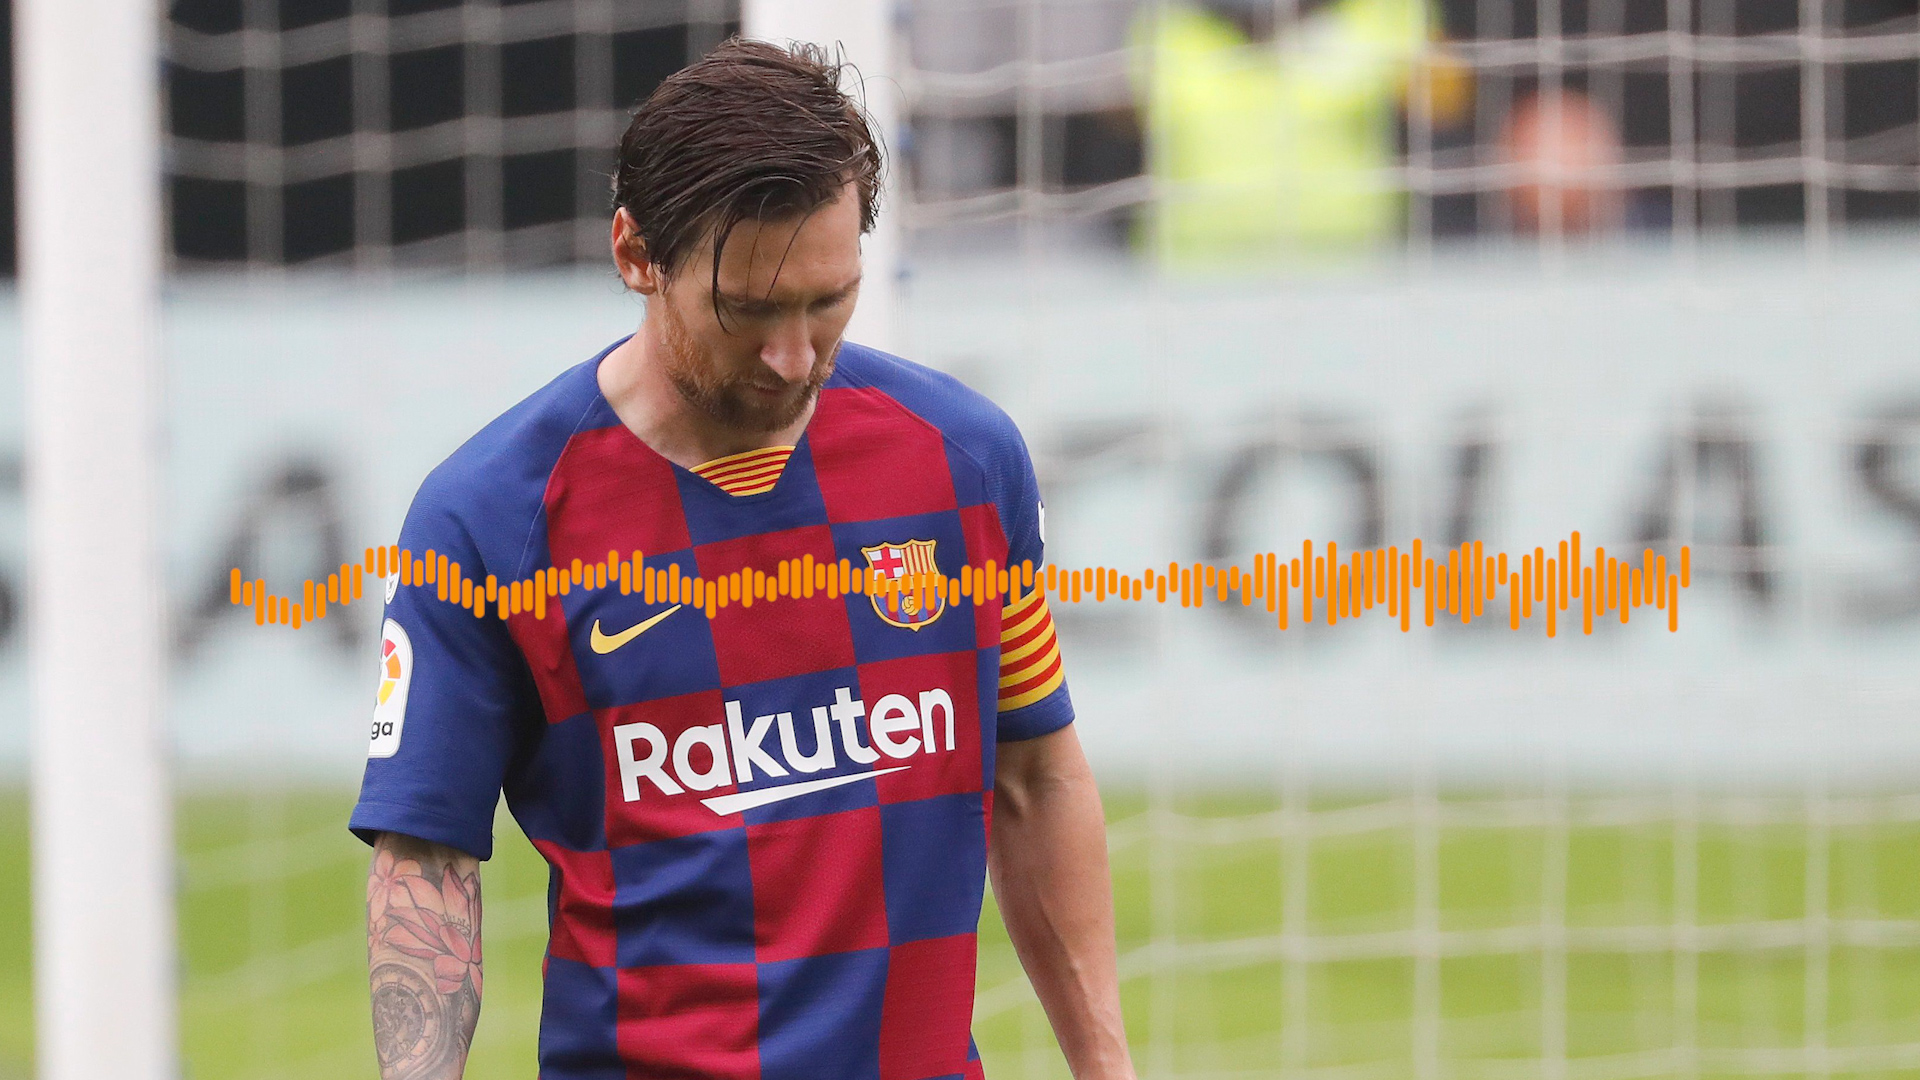 Galería de fotos: Messi dejó Barcelona y hace delirar a París